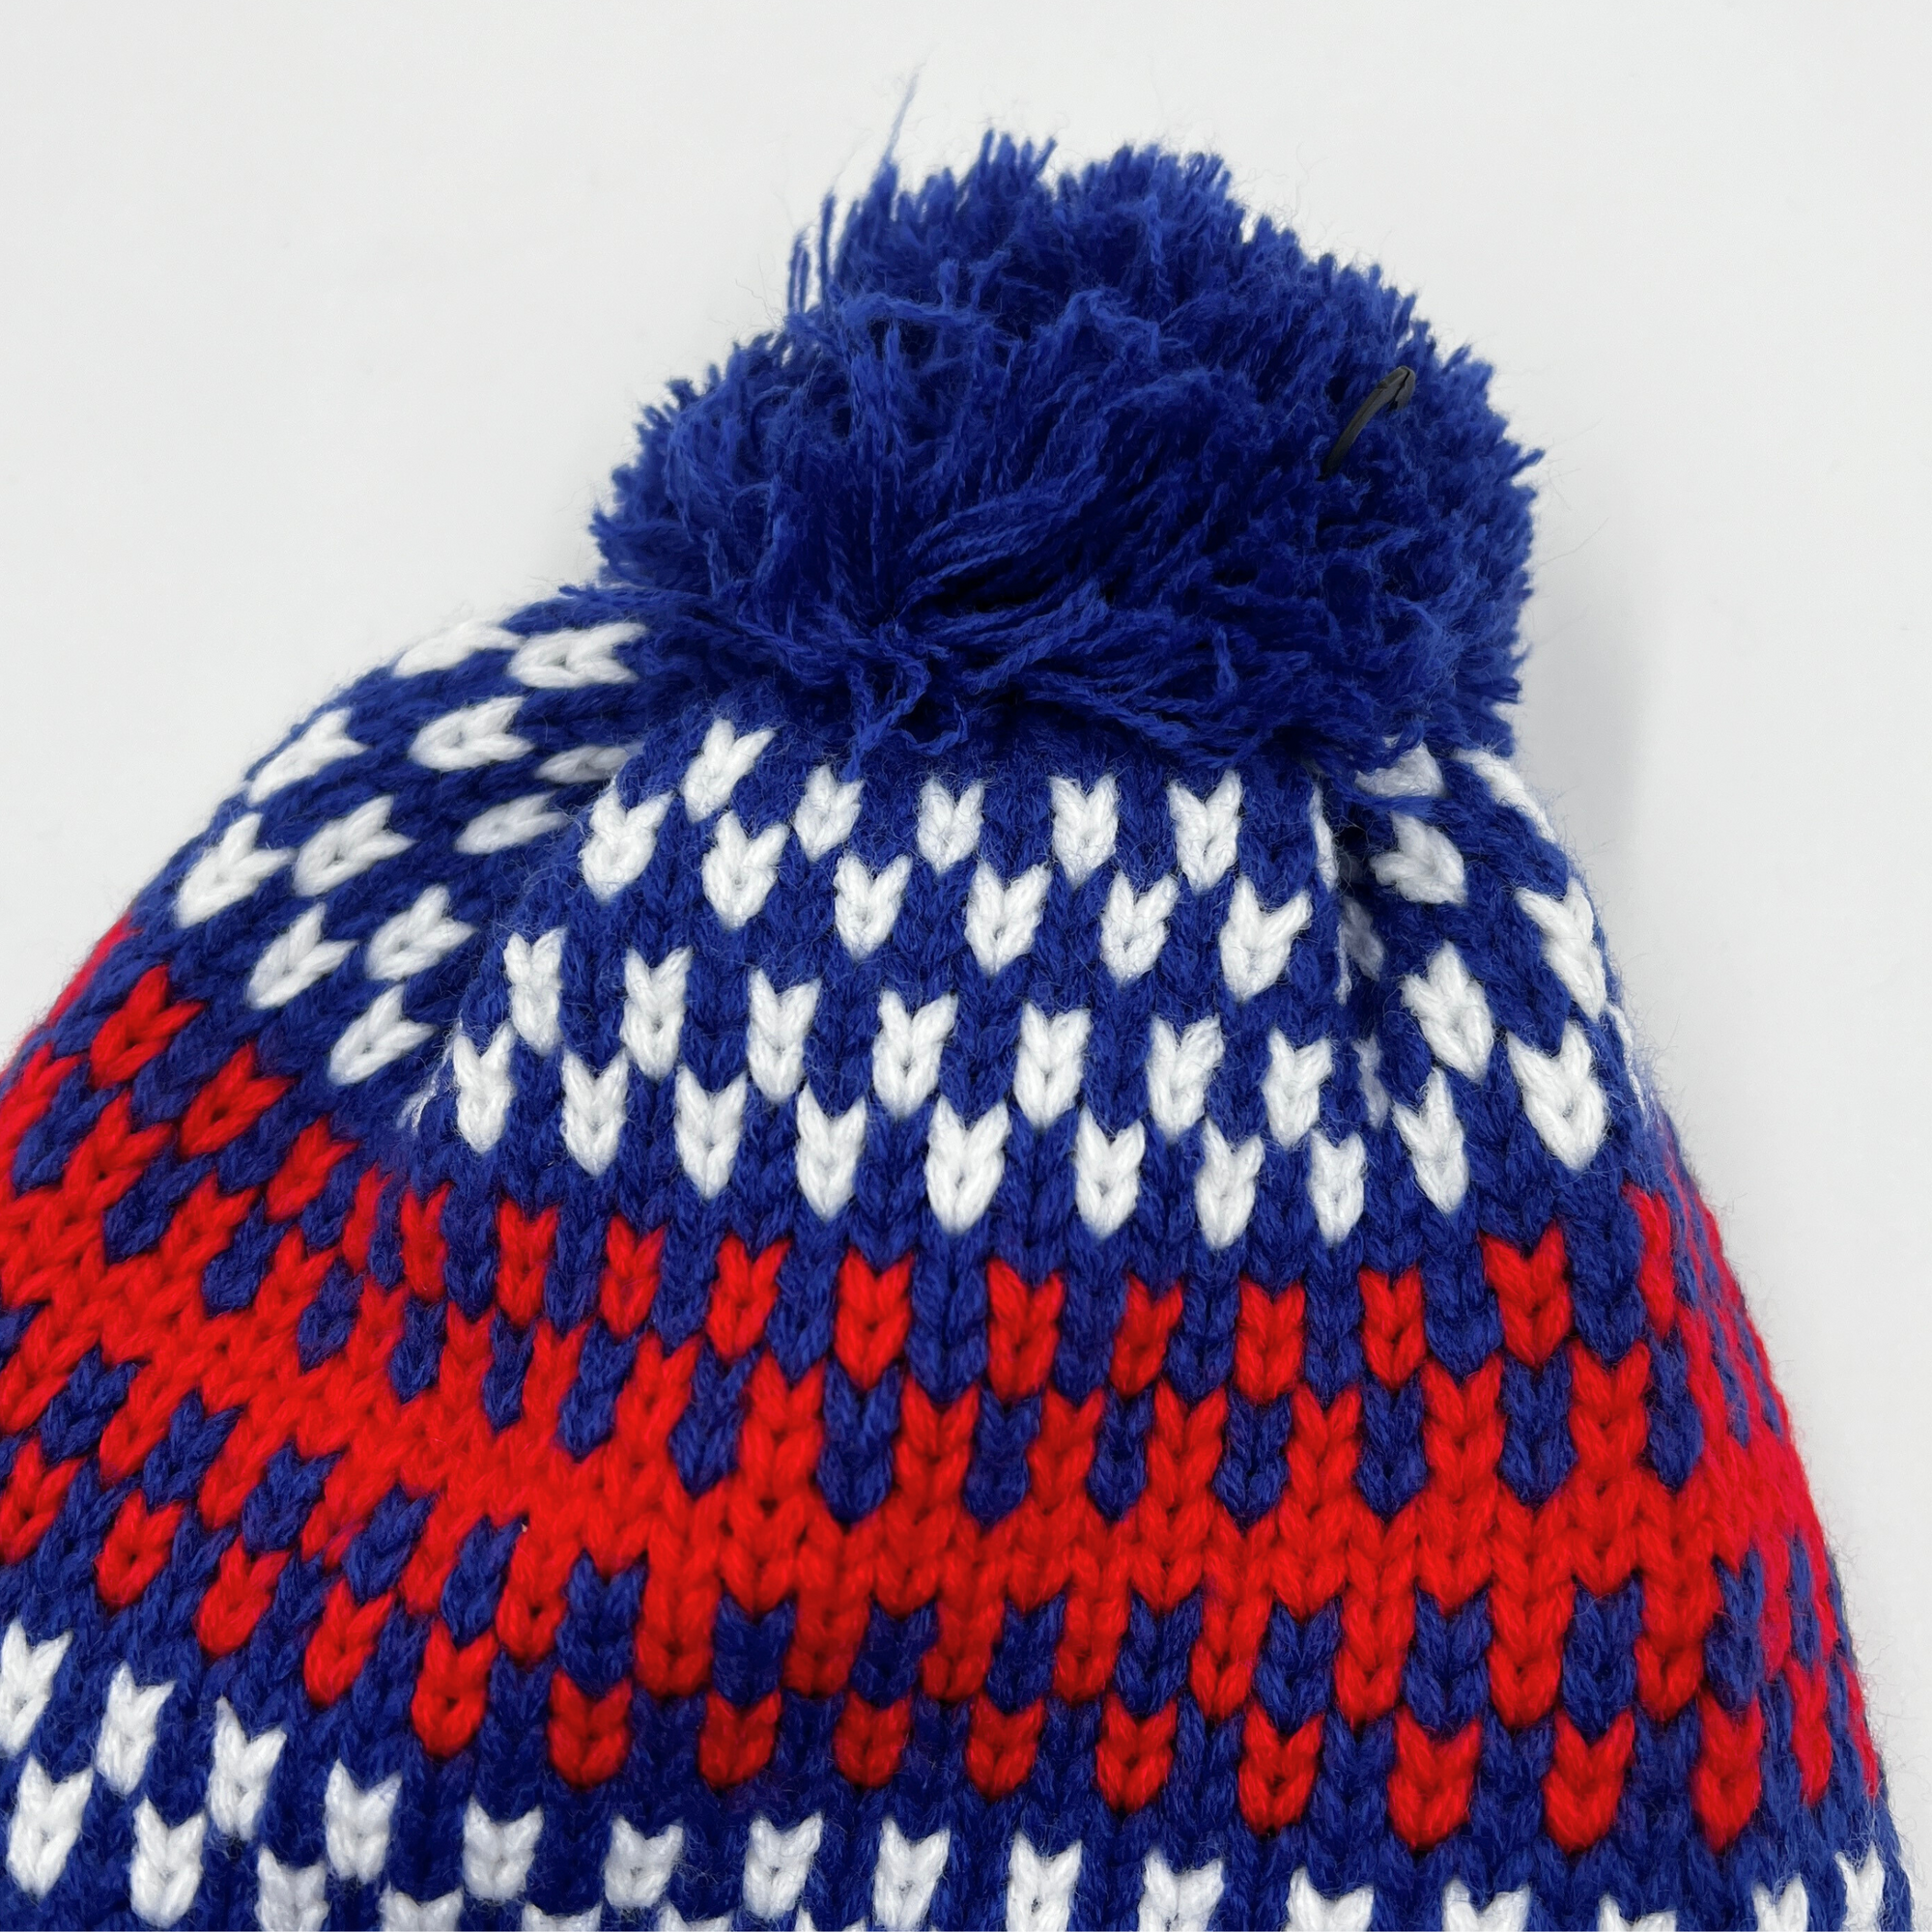 Youth New Era Buffalo Bills Knitted Striped Winter Hat